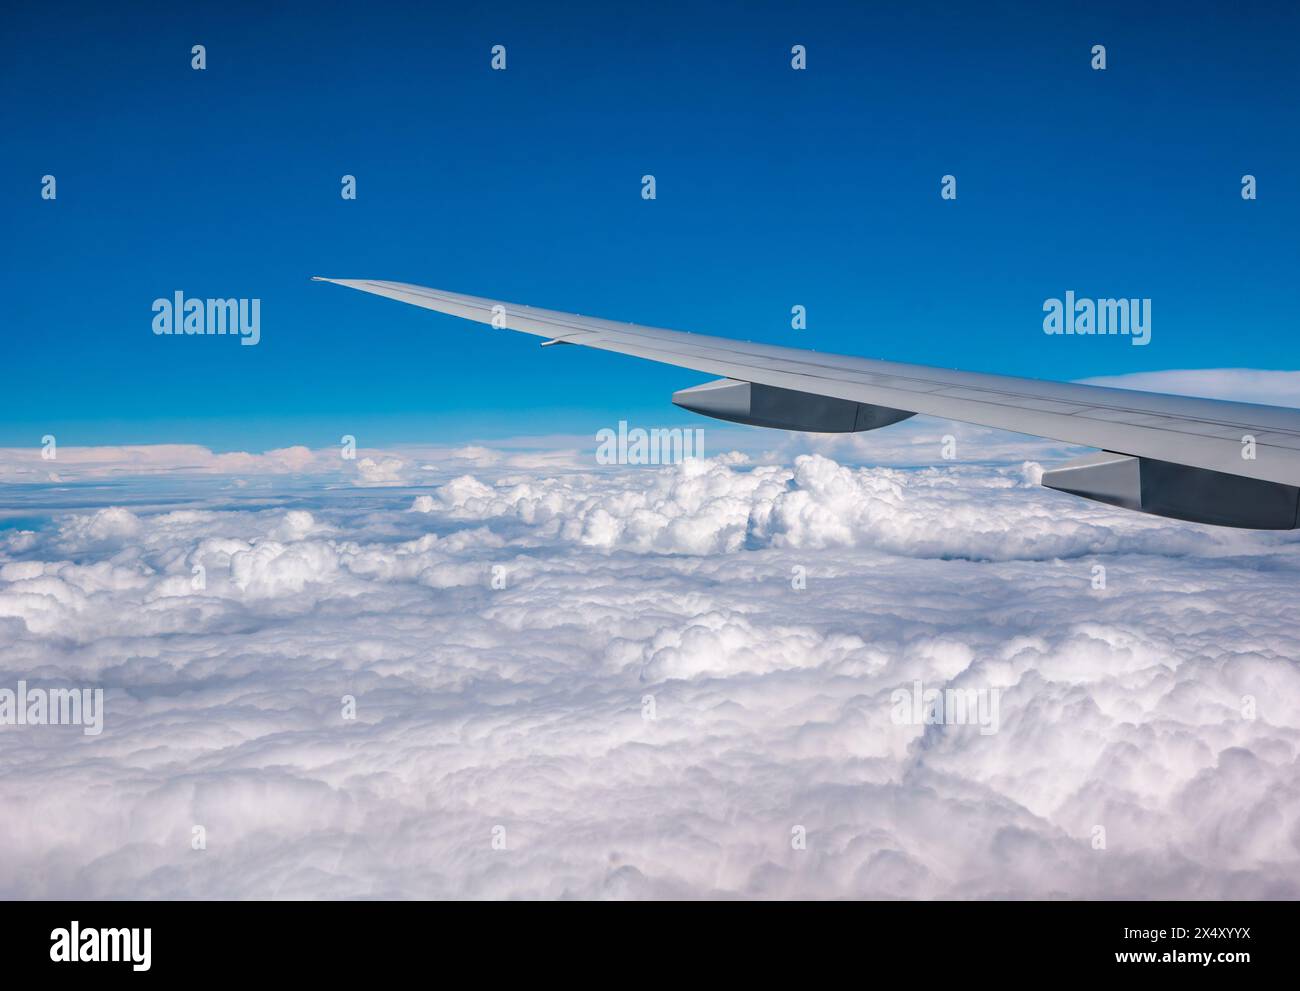 Vue depuis la fenêtre de l'avion de l'aile de l'avion avec le ciel bleu brillant et les nuages blancs gonflés Banque D'Images